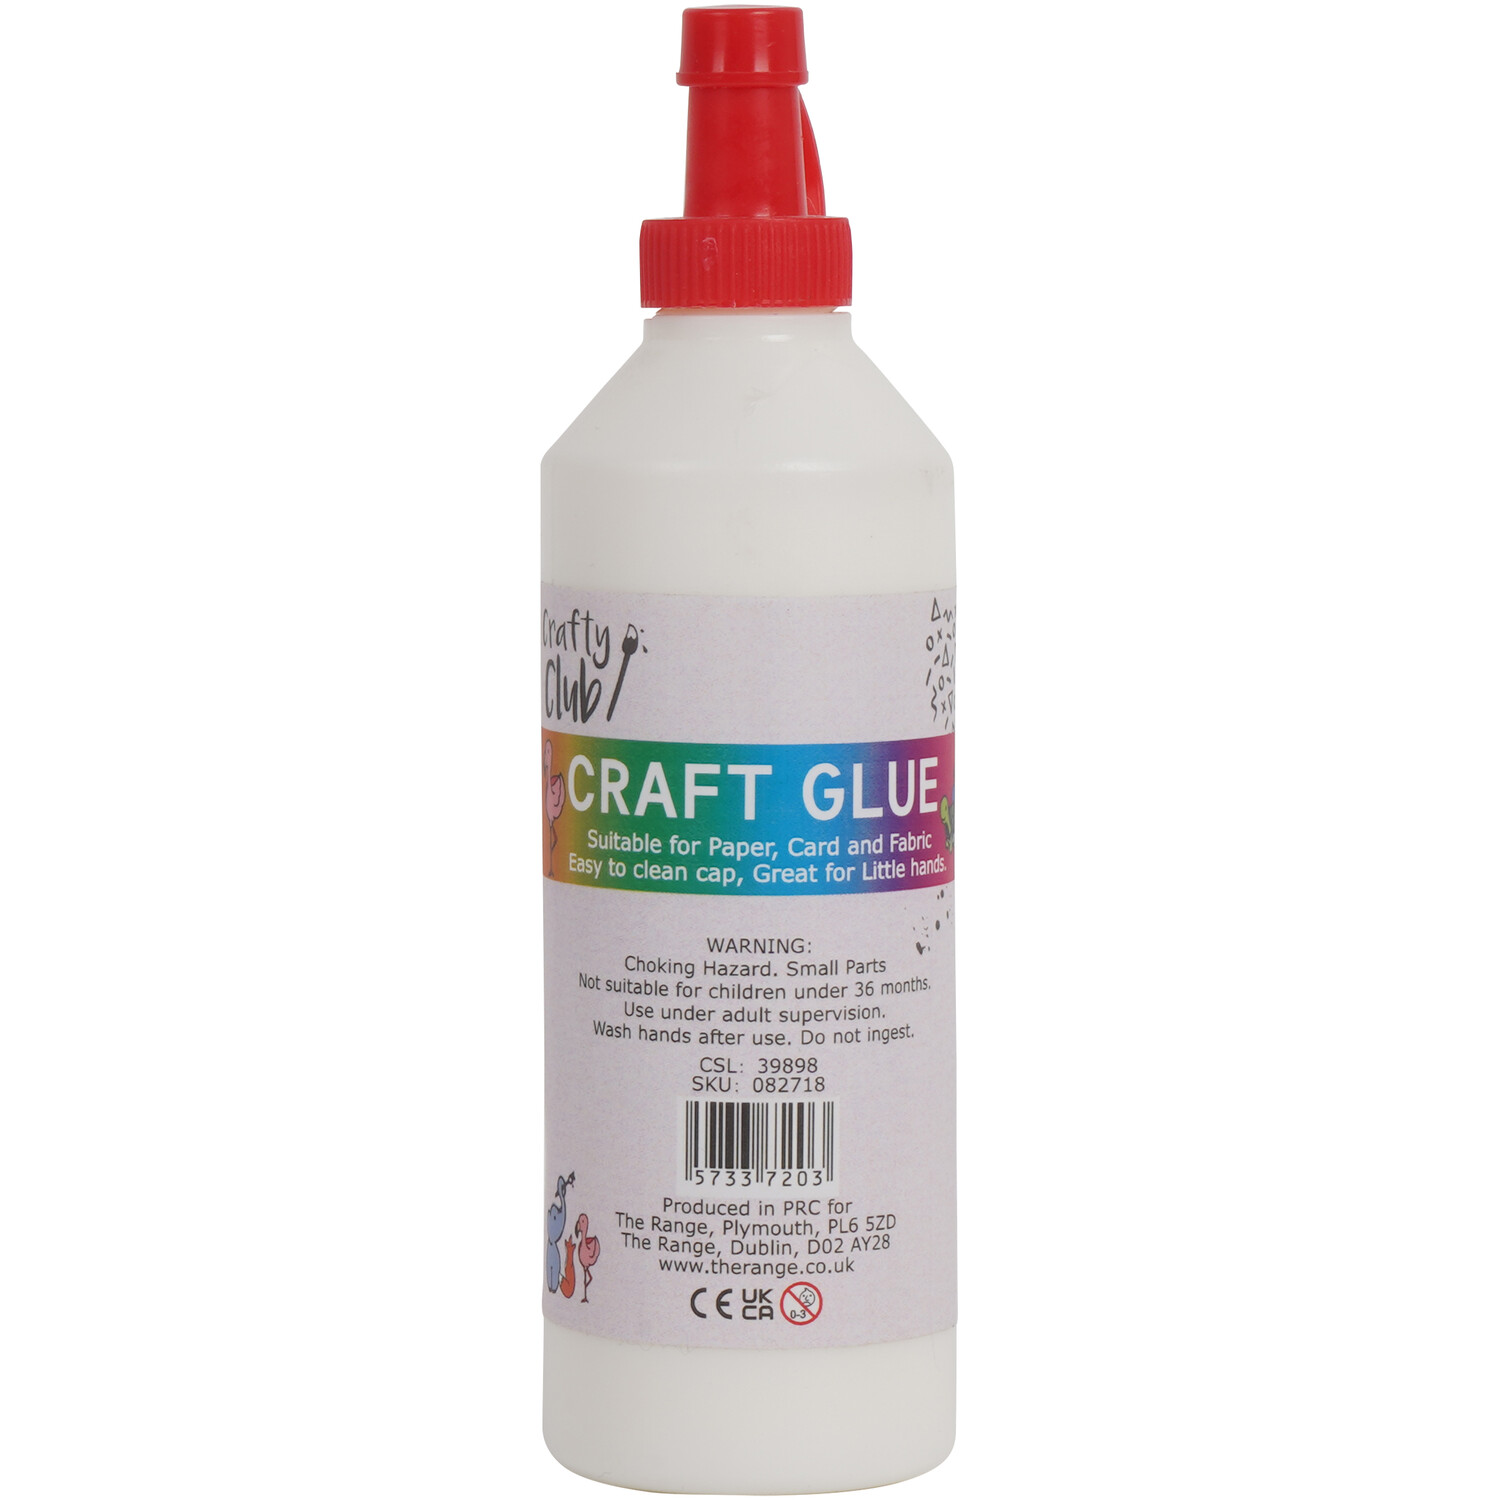 Crafty Club Craft Glue Image 1